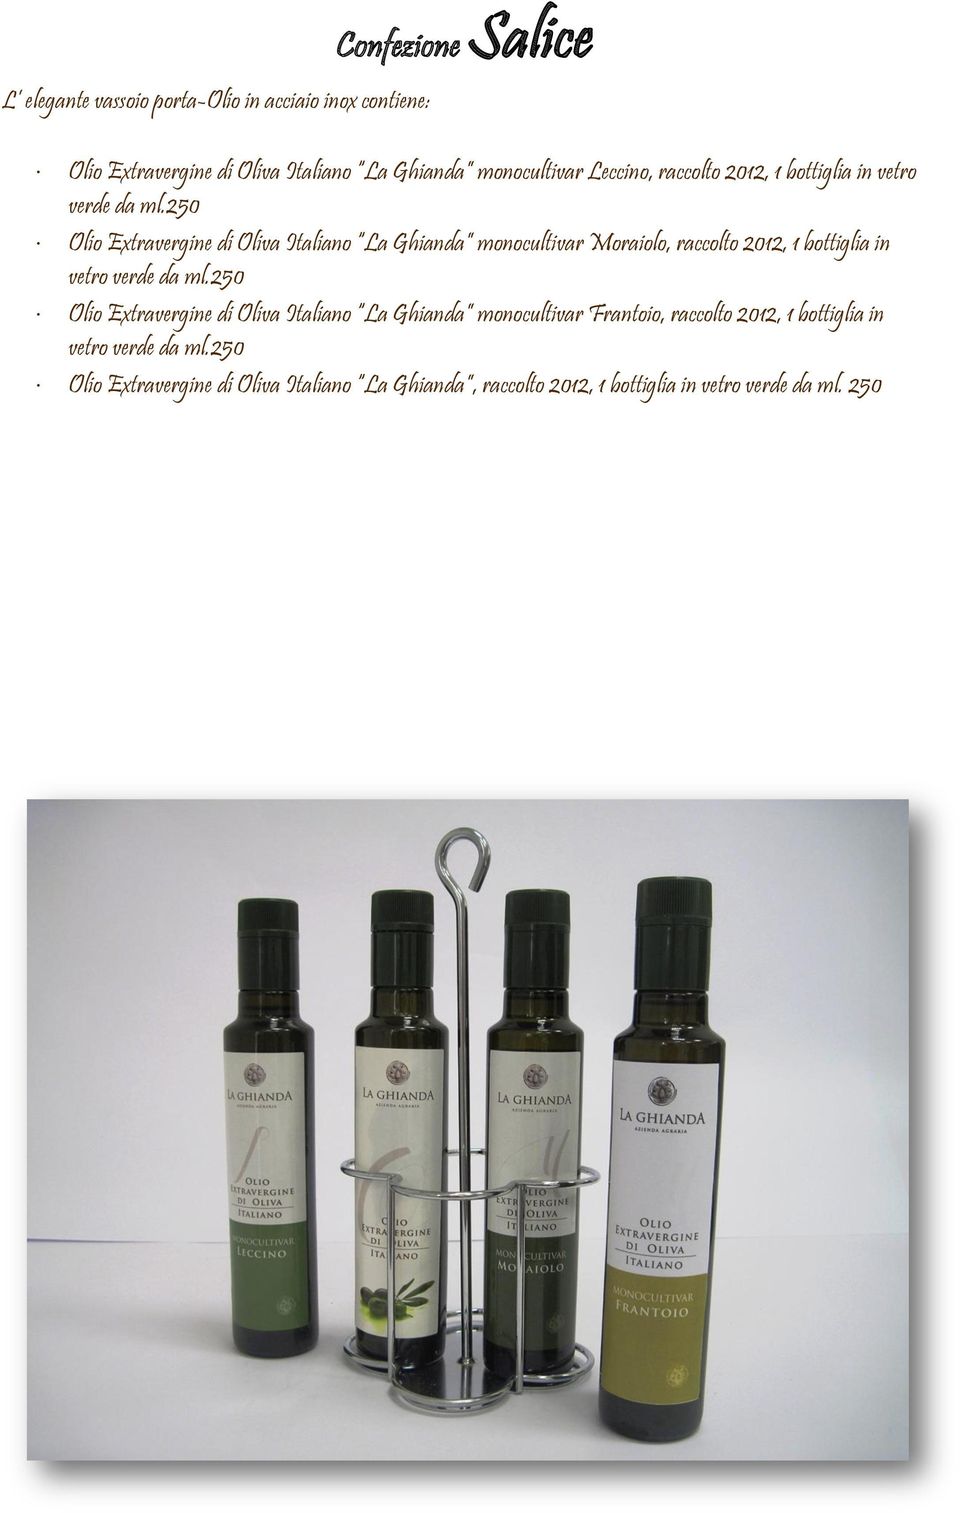 250 Olio Extravergine di Oliva Italiano La Ghianda monocultivar Moraiolo, raccolto 2012, 1 bottiglia in vetro verde da ml.